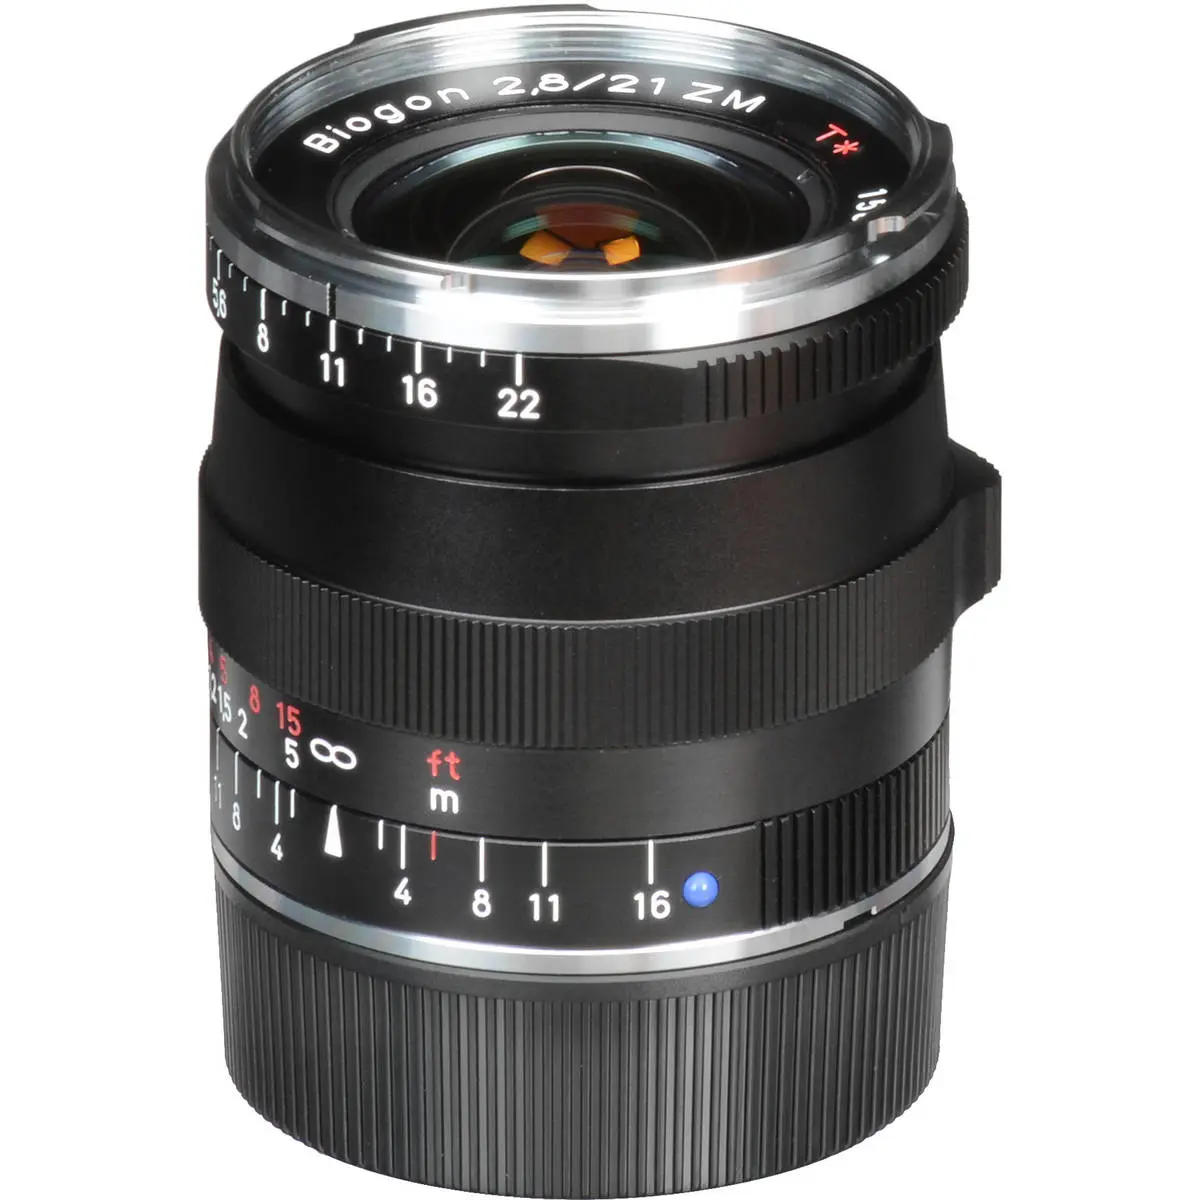 13. Carl Zeiss 21mm F/2.8 BIOGON T* ZM (Leica M) Black Lens